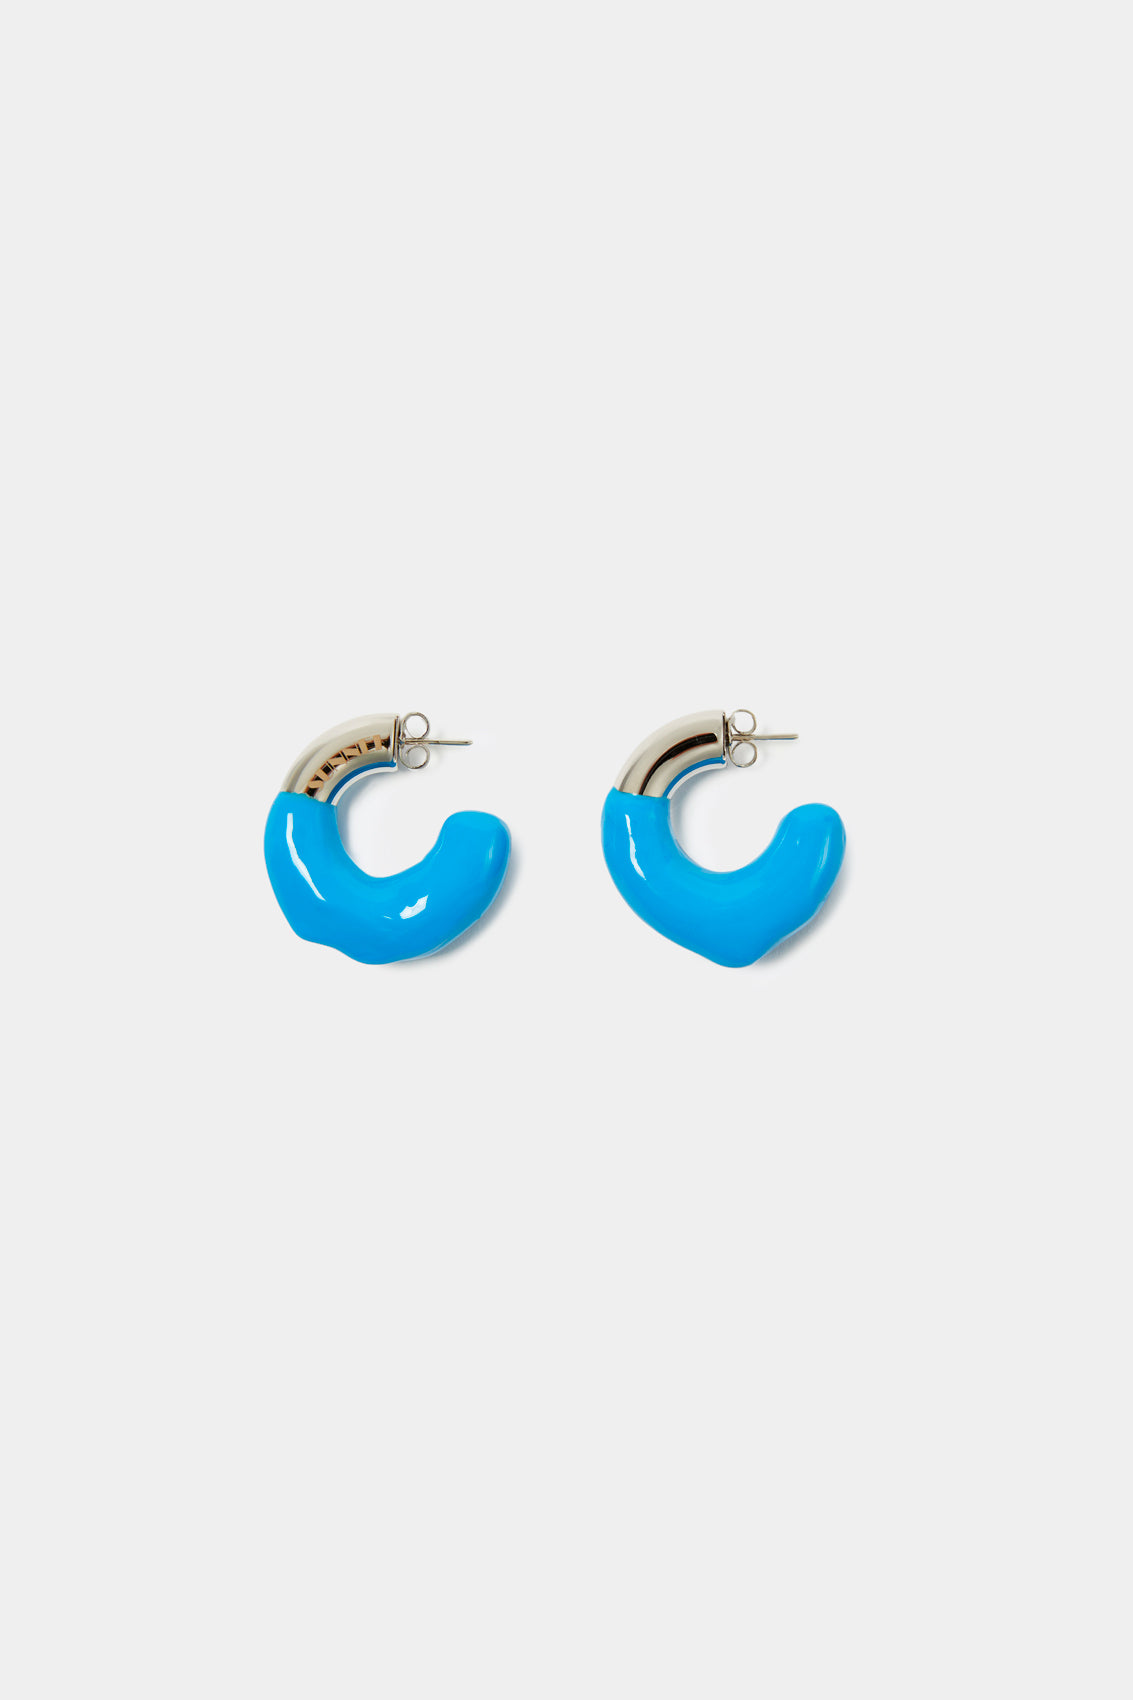 SMALL RUBBERIZED EARRINGS SILVER / light blue